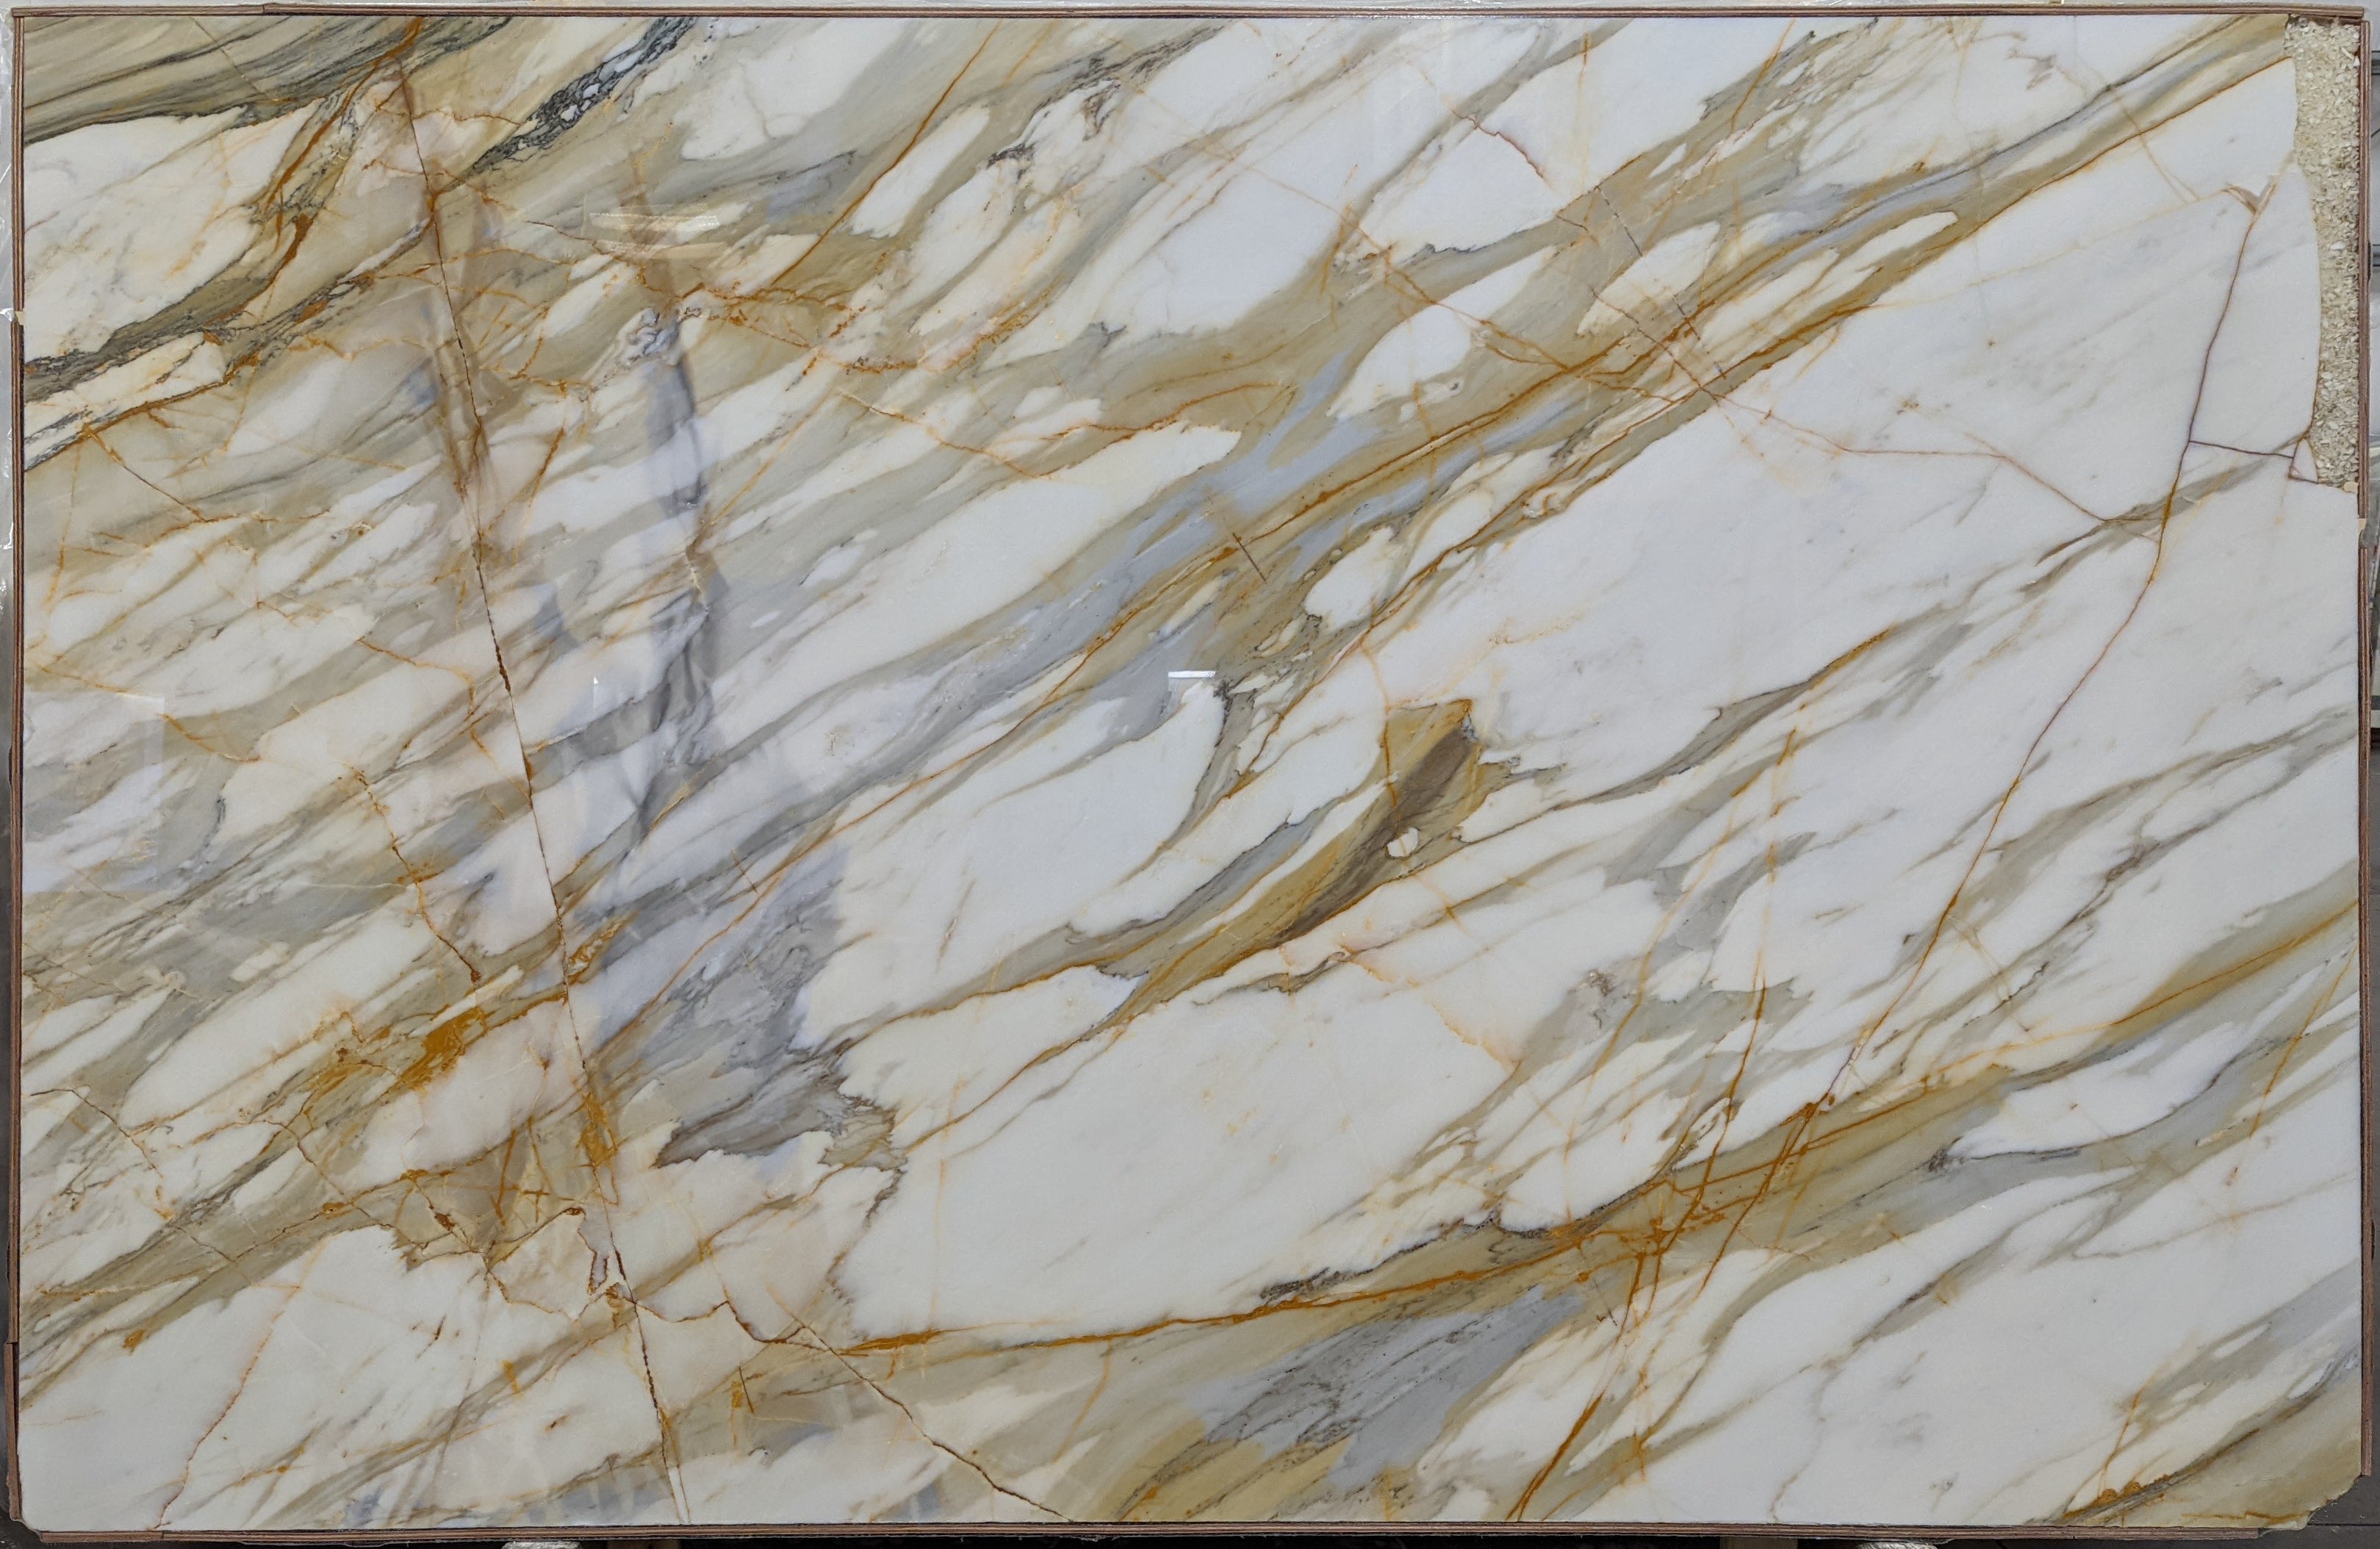  Calacatta Macchia Vecchia Marble Slab 3/4 - 26092#06 -  69x107 